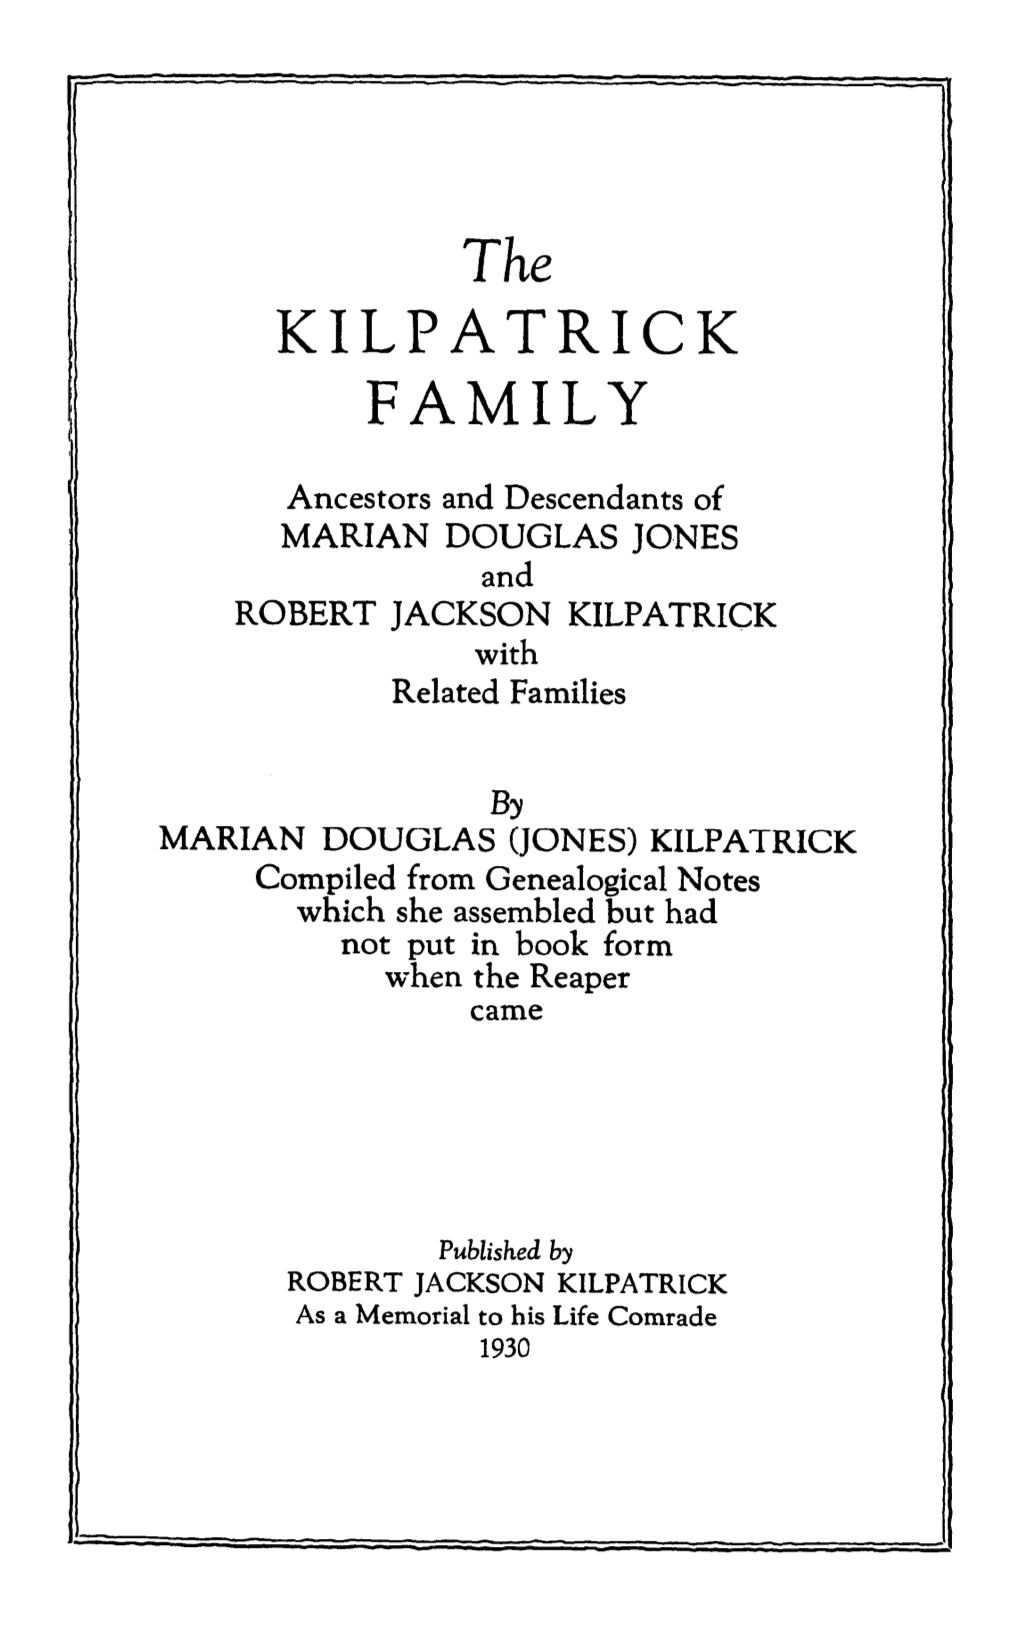 Kilpatrick Family